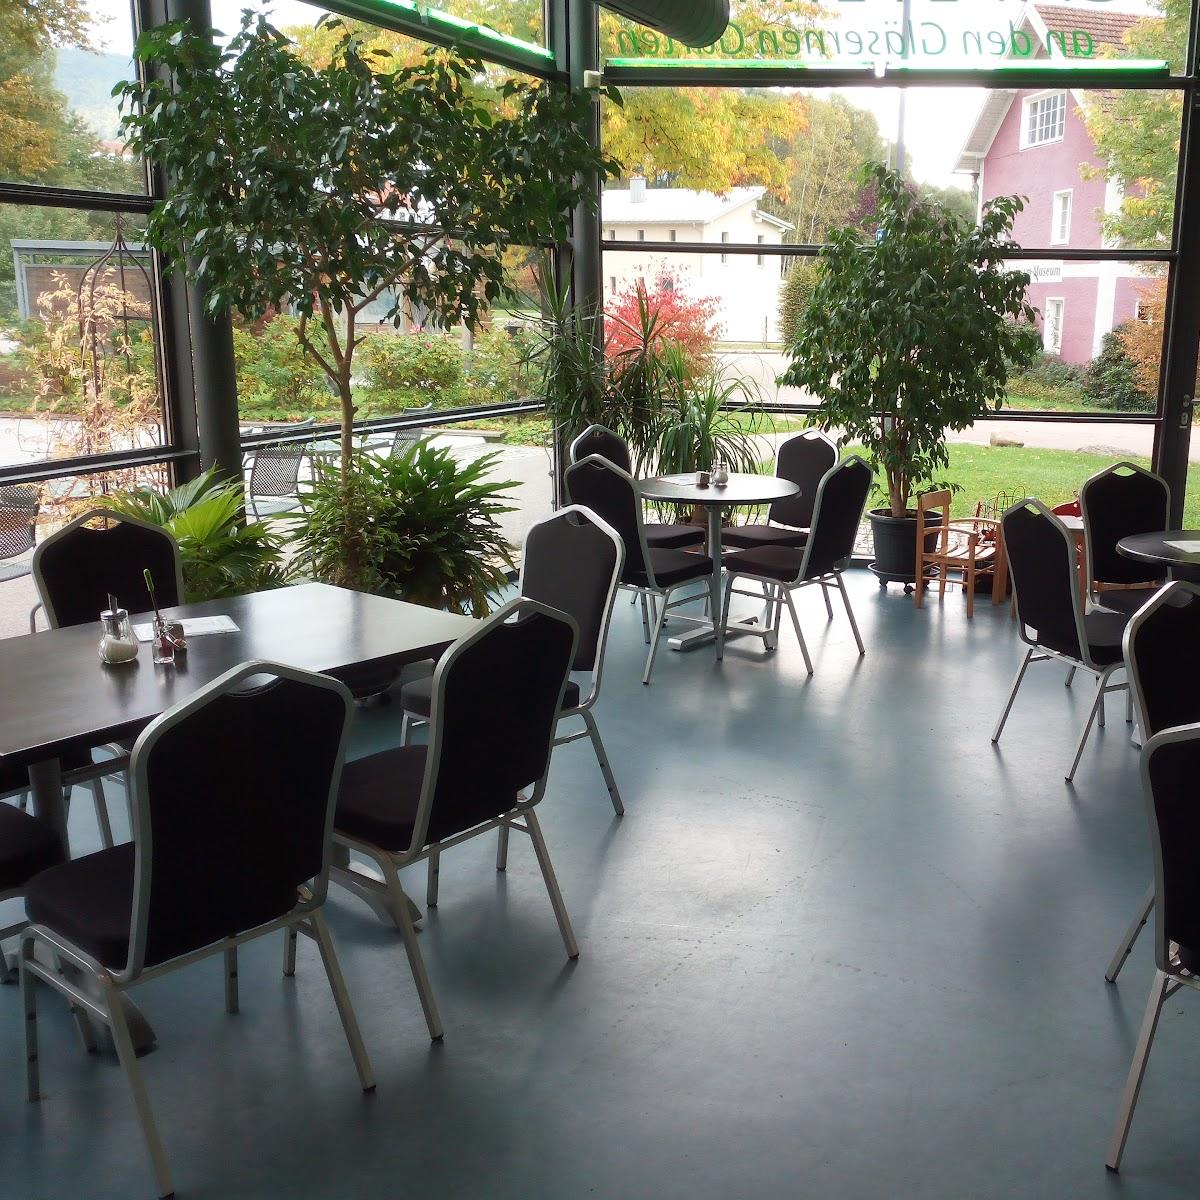 Restaurant "Caféteria im Glasmuseum an den gläsernen Gärten" in Frauenau